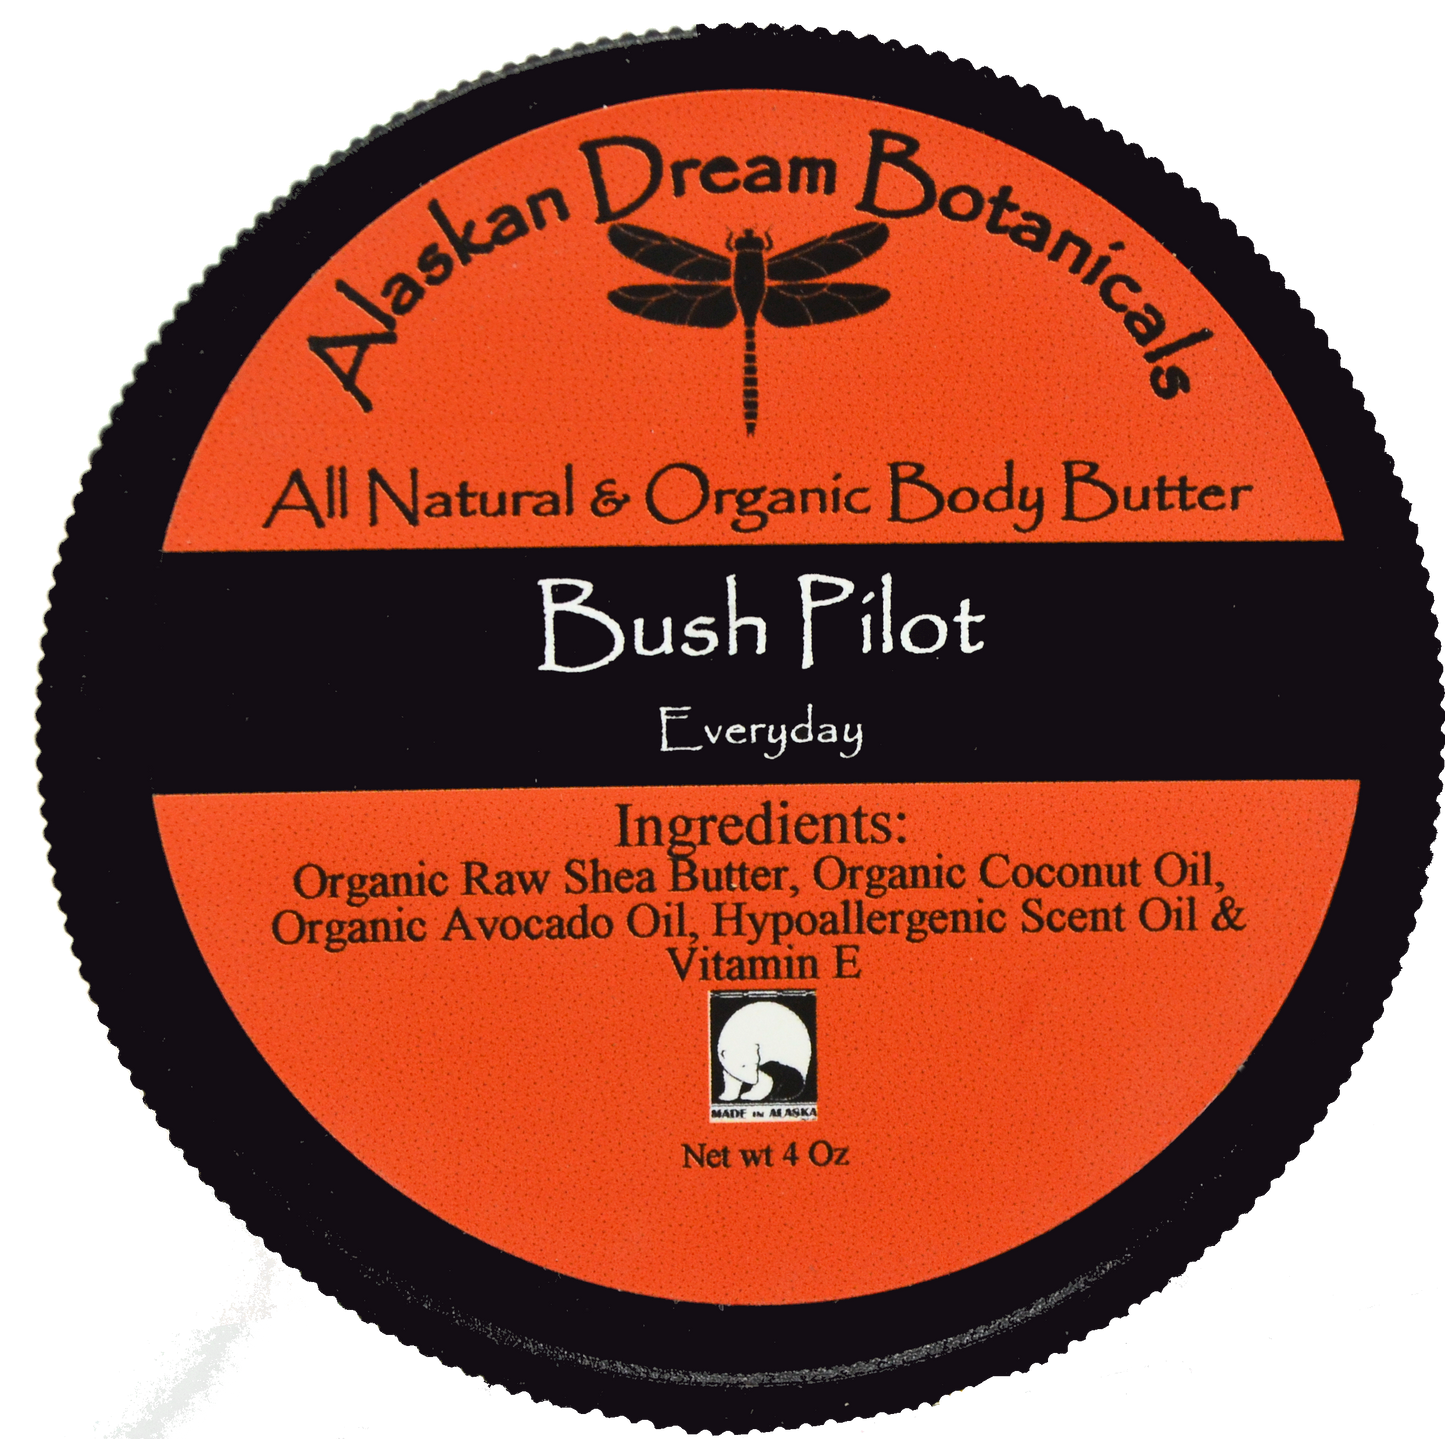 Bush Pilot Everyday Body Butter - Alaskan Dream Botanicals